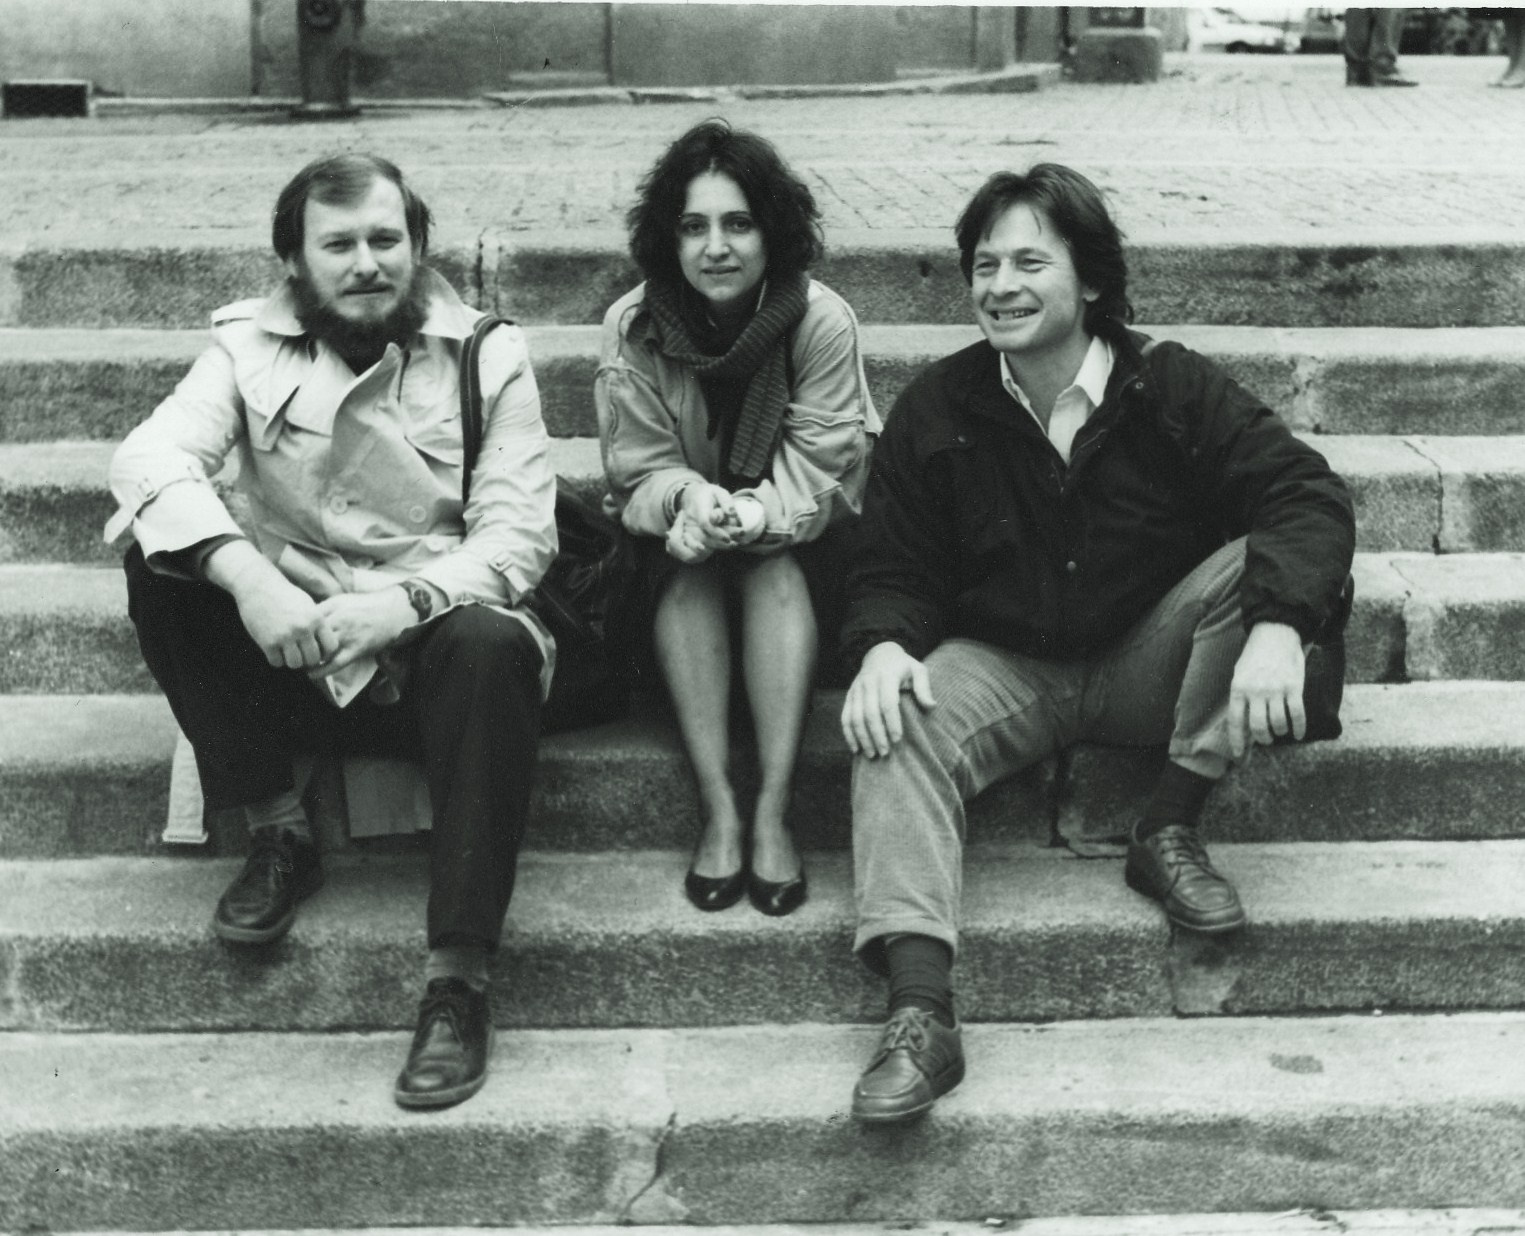 Zu sehen sind Miro A. Cimerman, Dunja Donassy-Bonačić und Vladimir Bonačić, in Paris, 1984